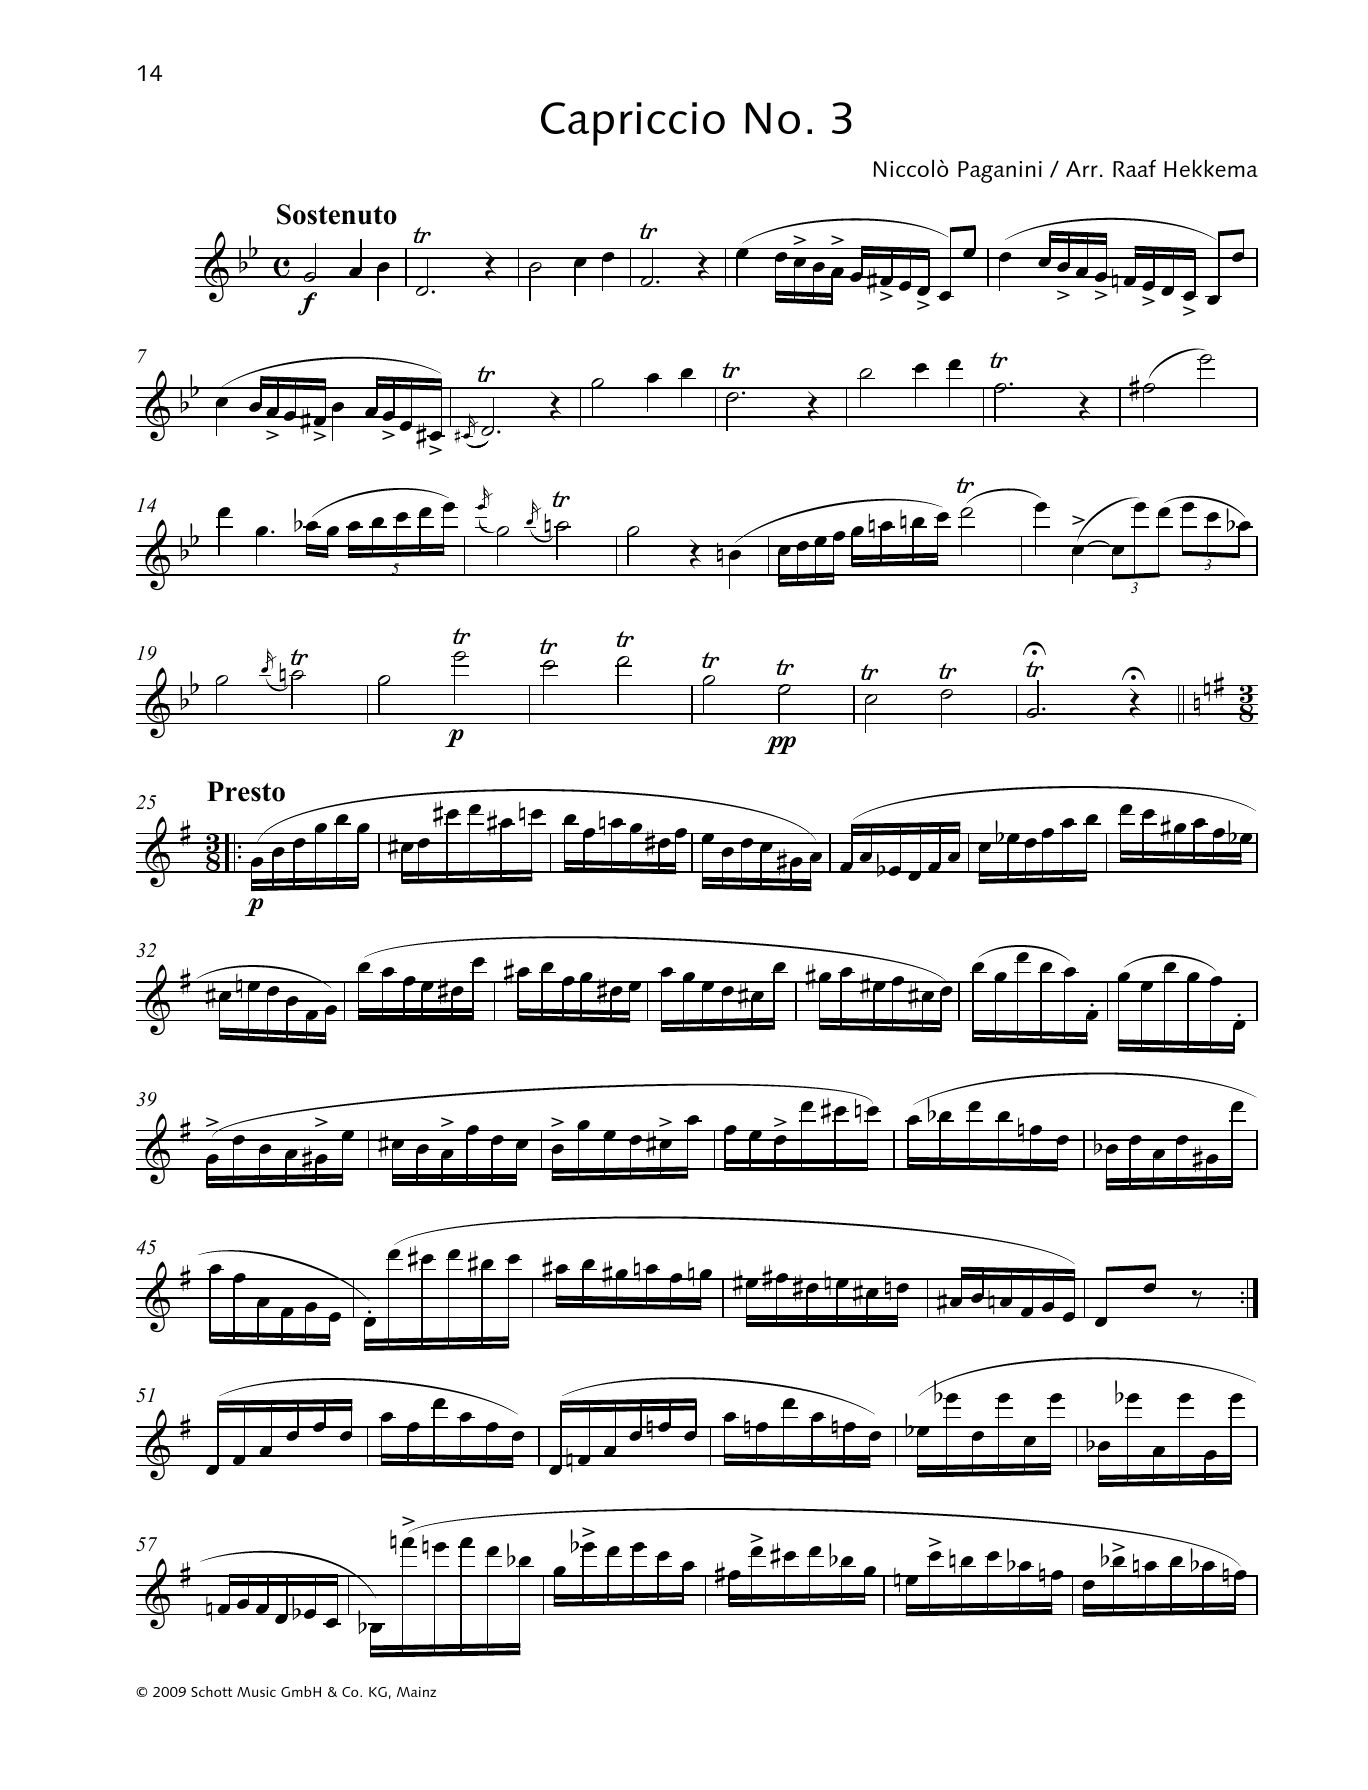 Download Niccolo Paganini Capriccio No. 3 Sheet Music